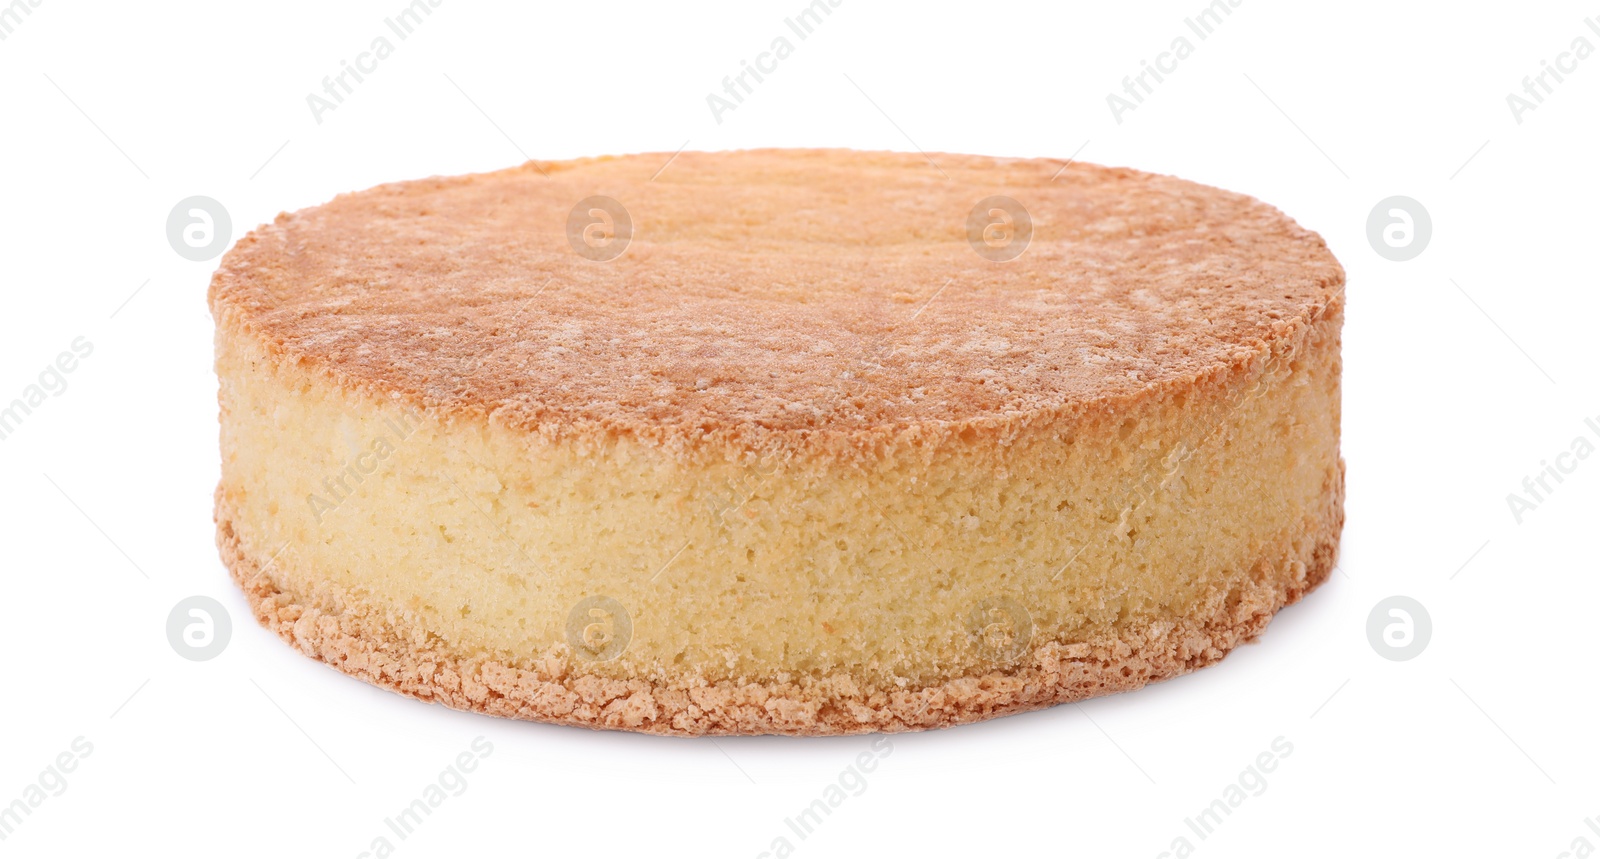 Photo of One tasty sponge cake isolated on white